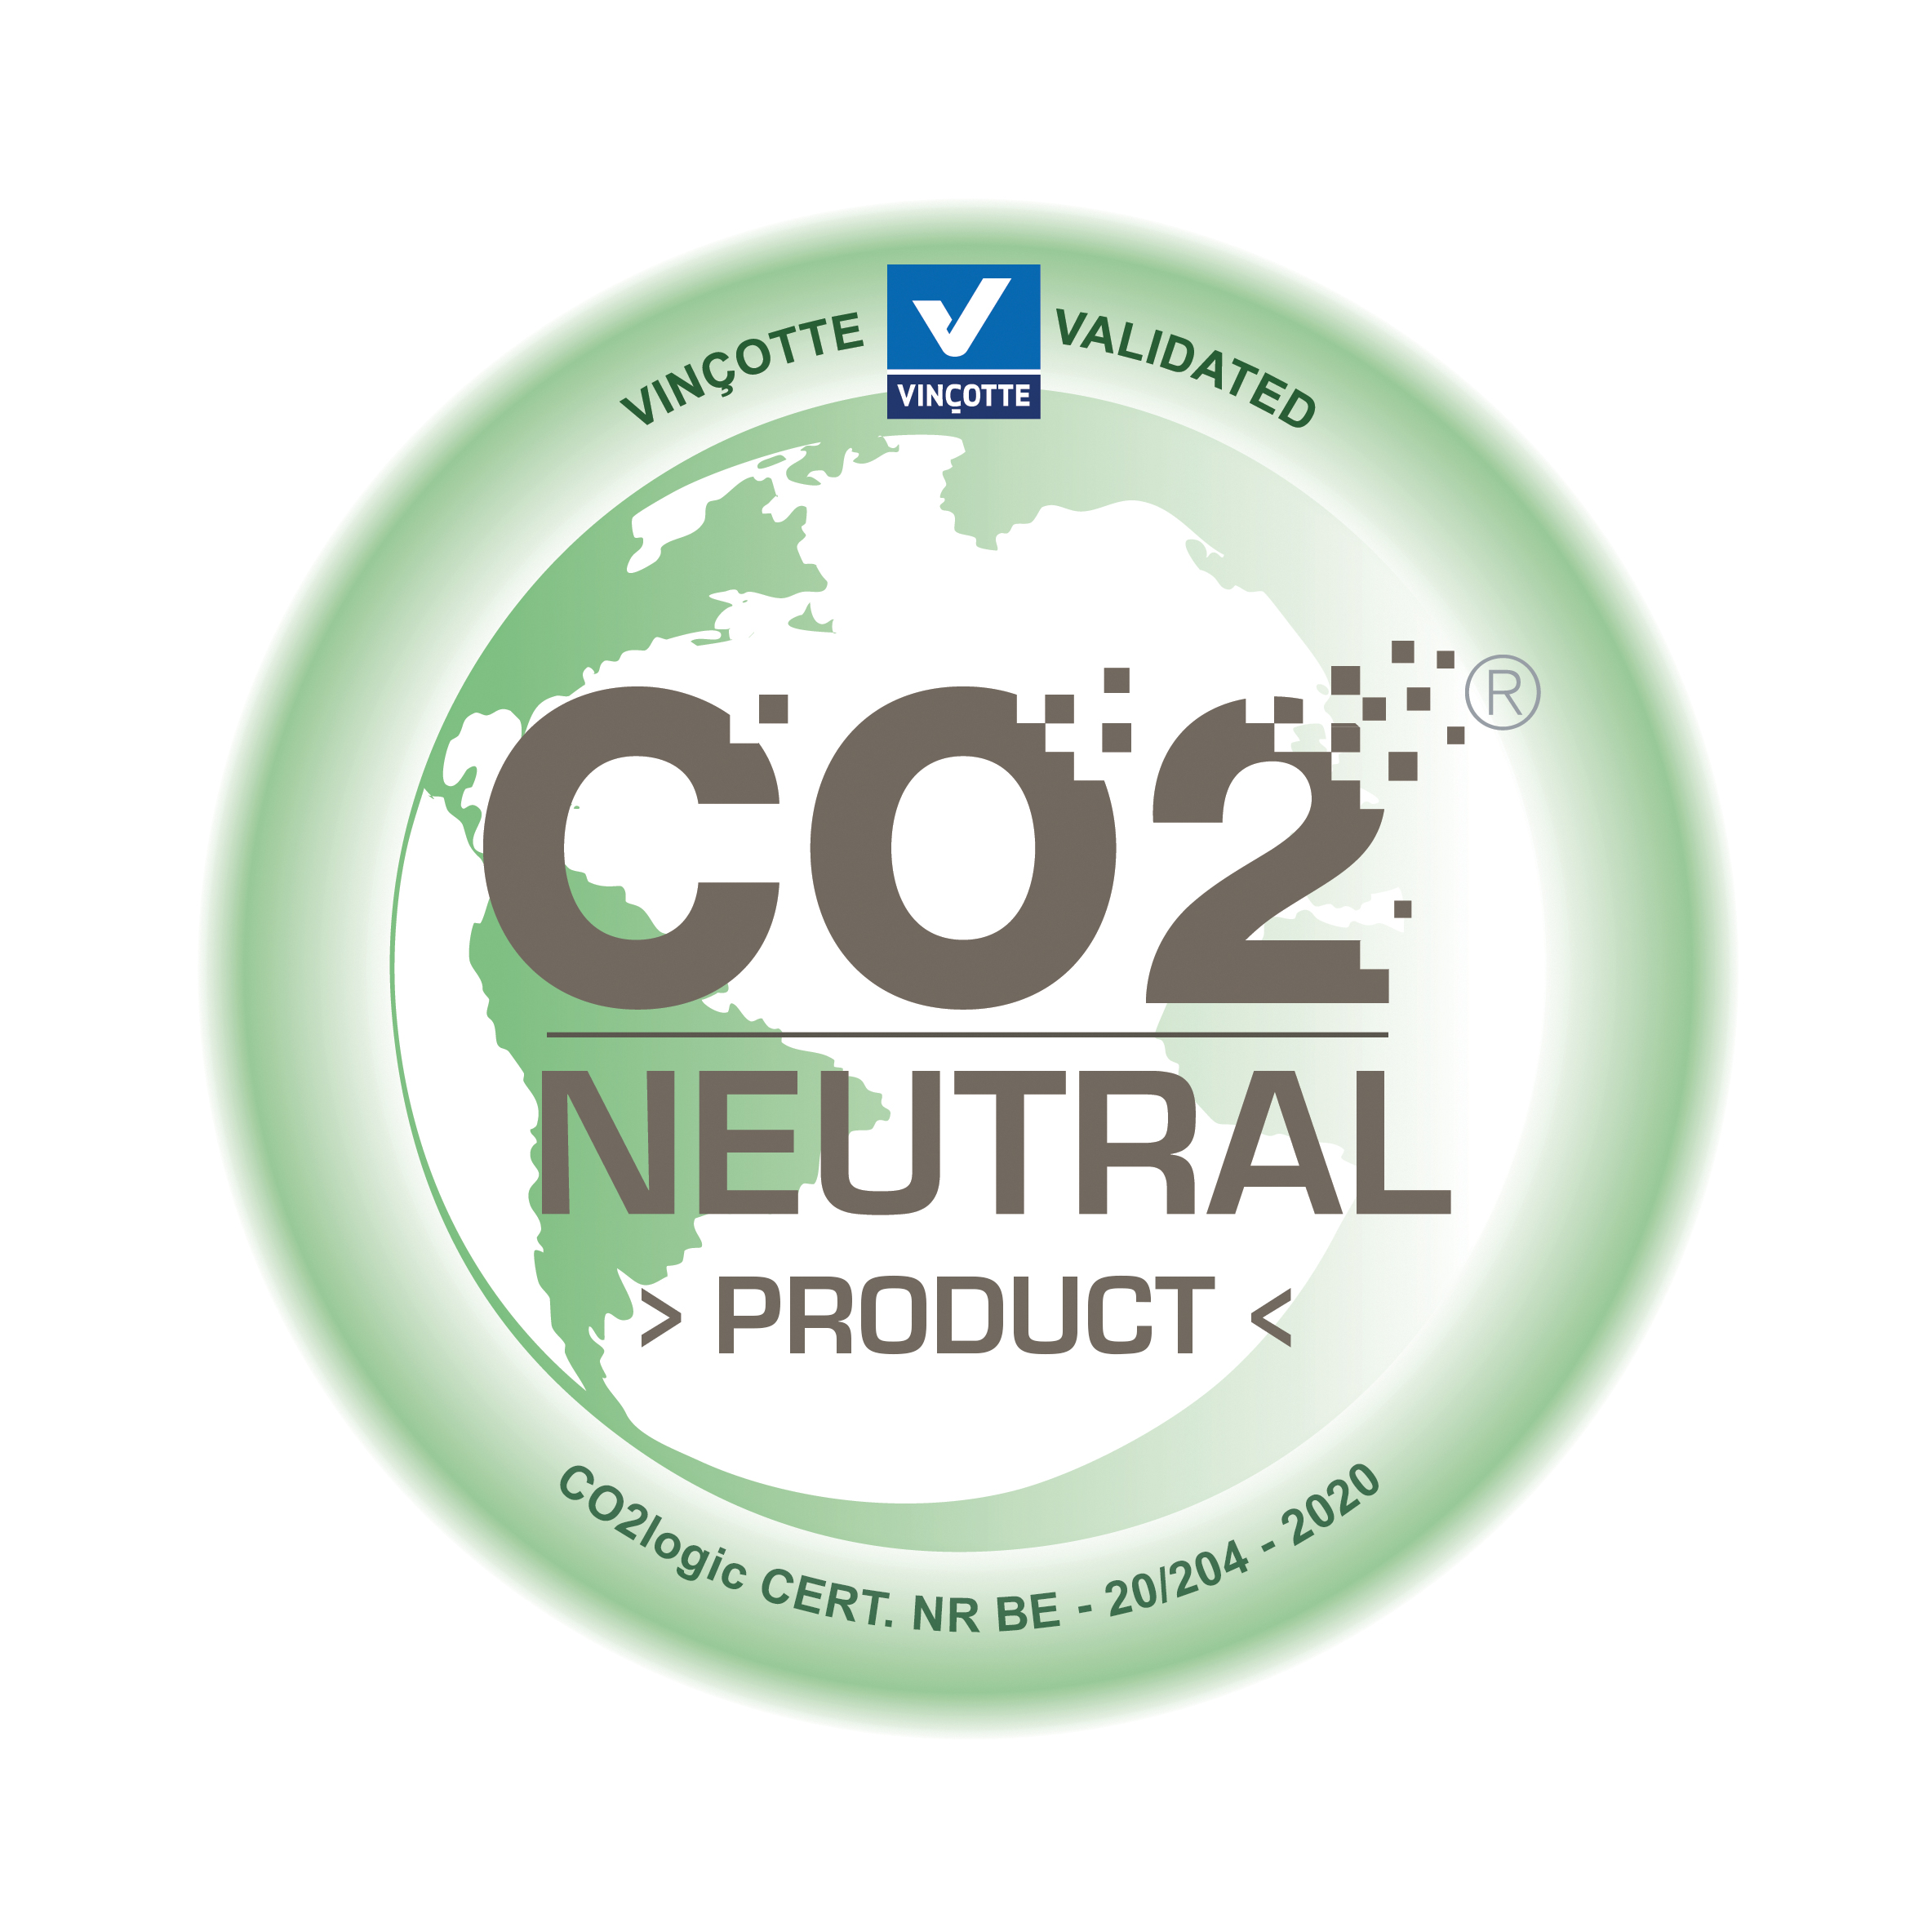 Vincotte CO2 neutral label